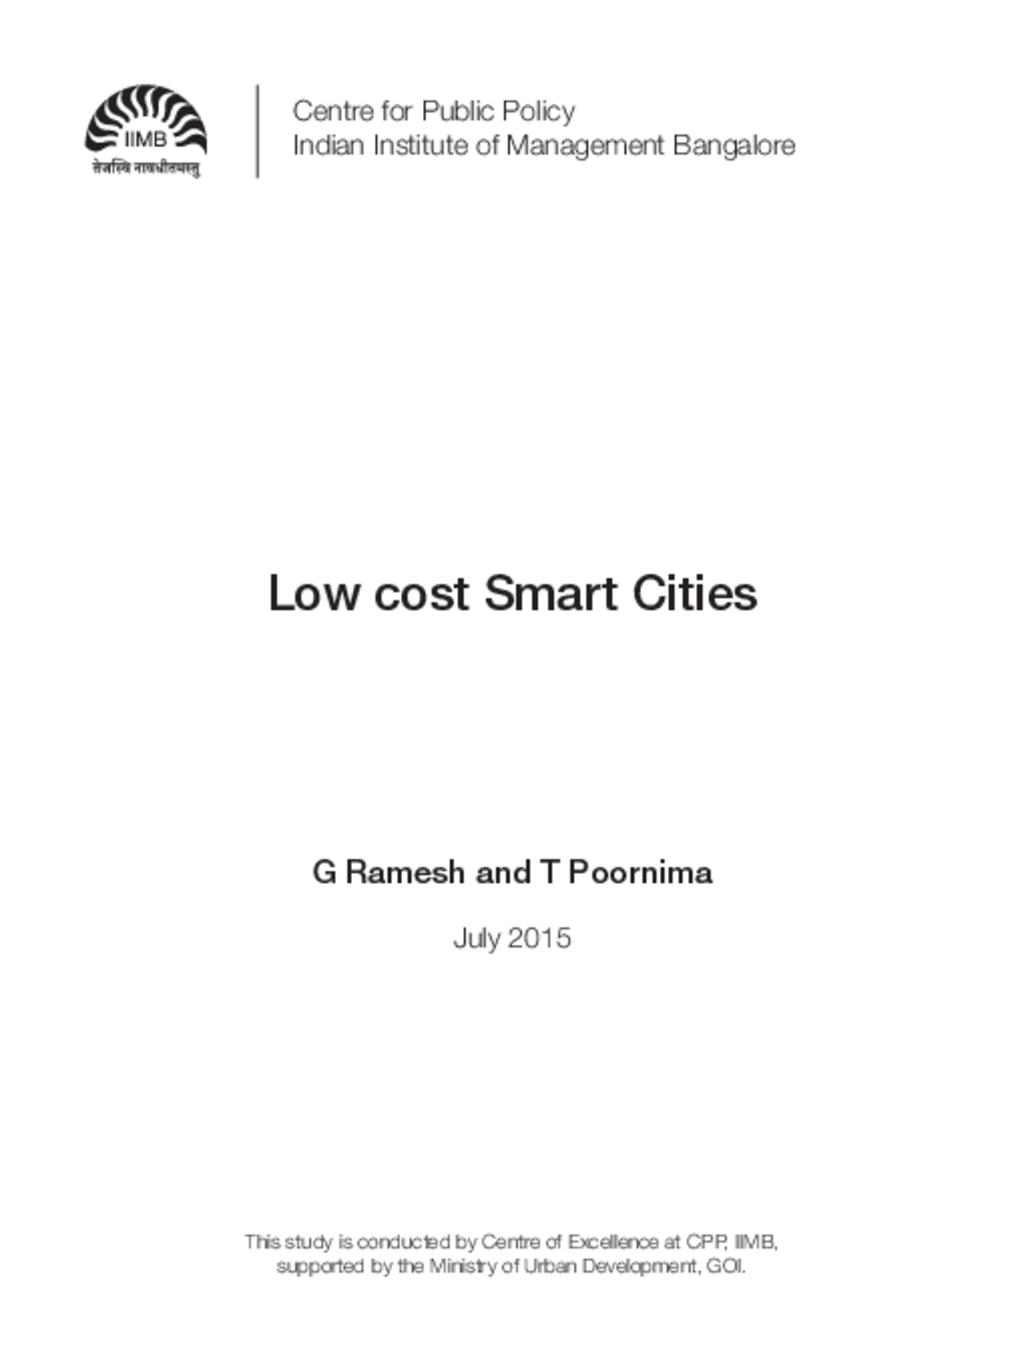 Low Cost Smart Cities